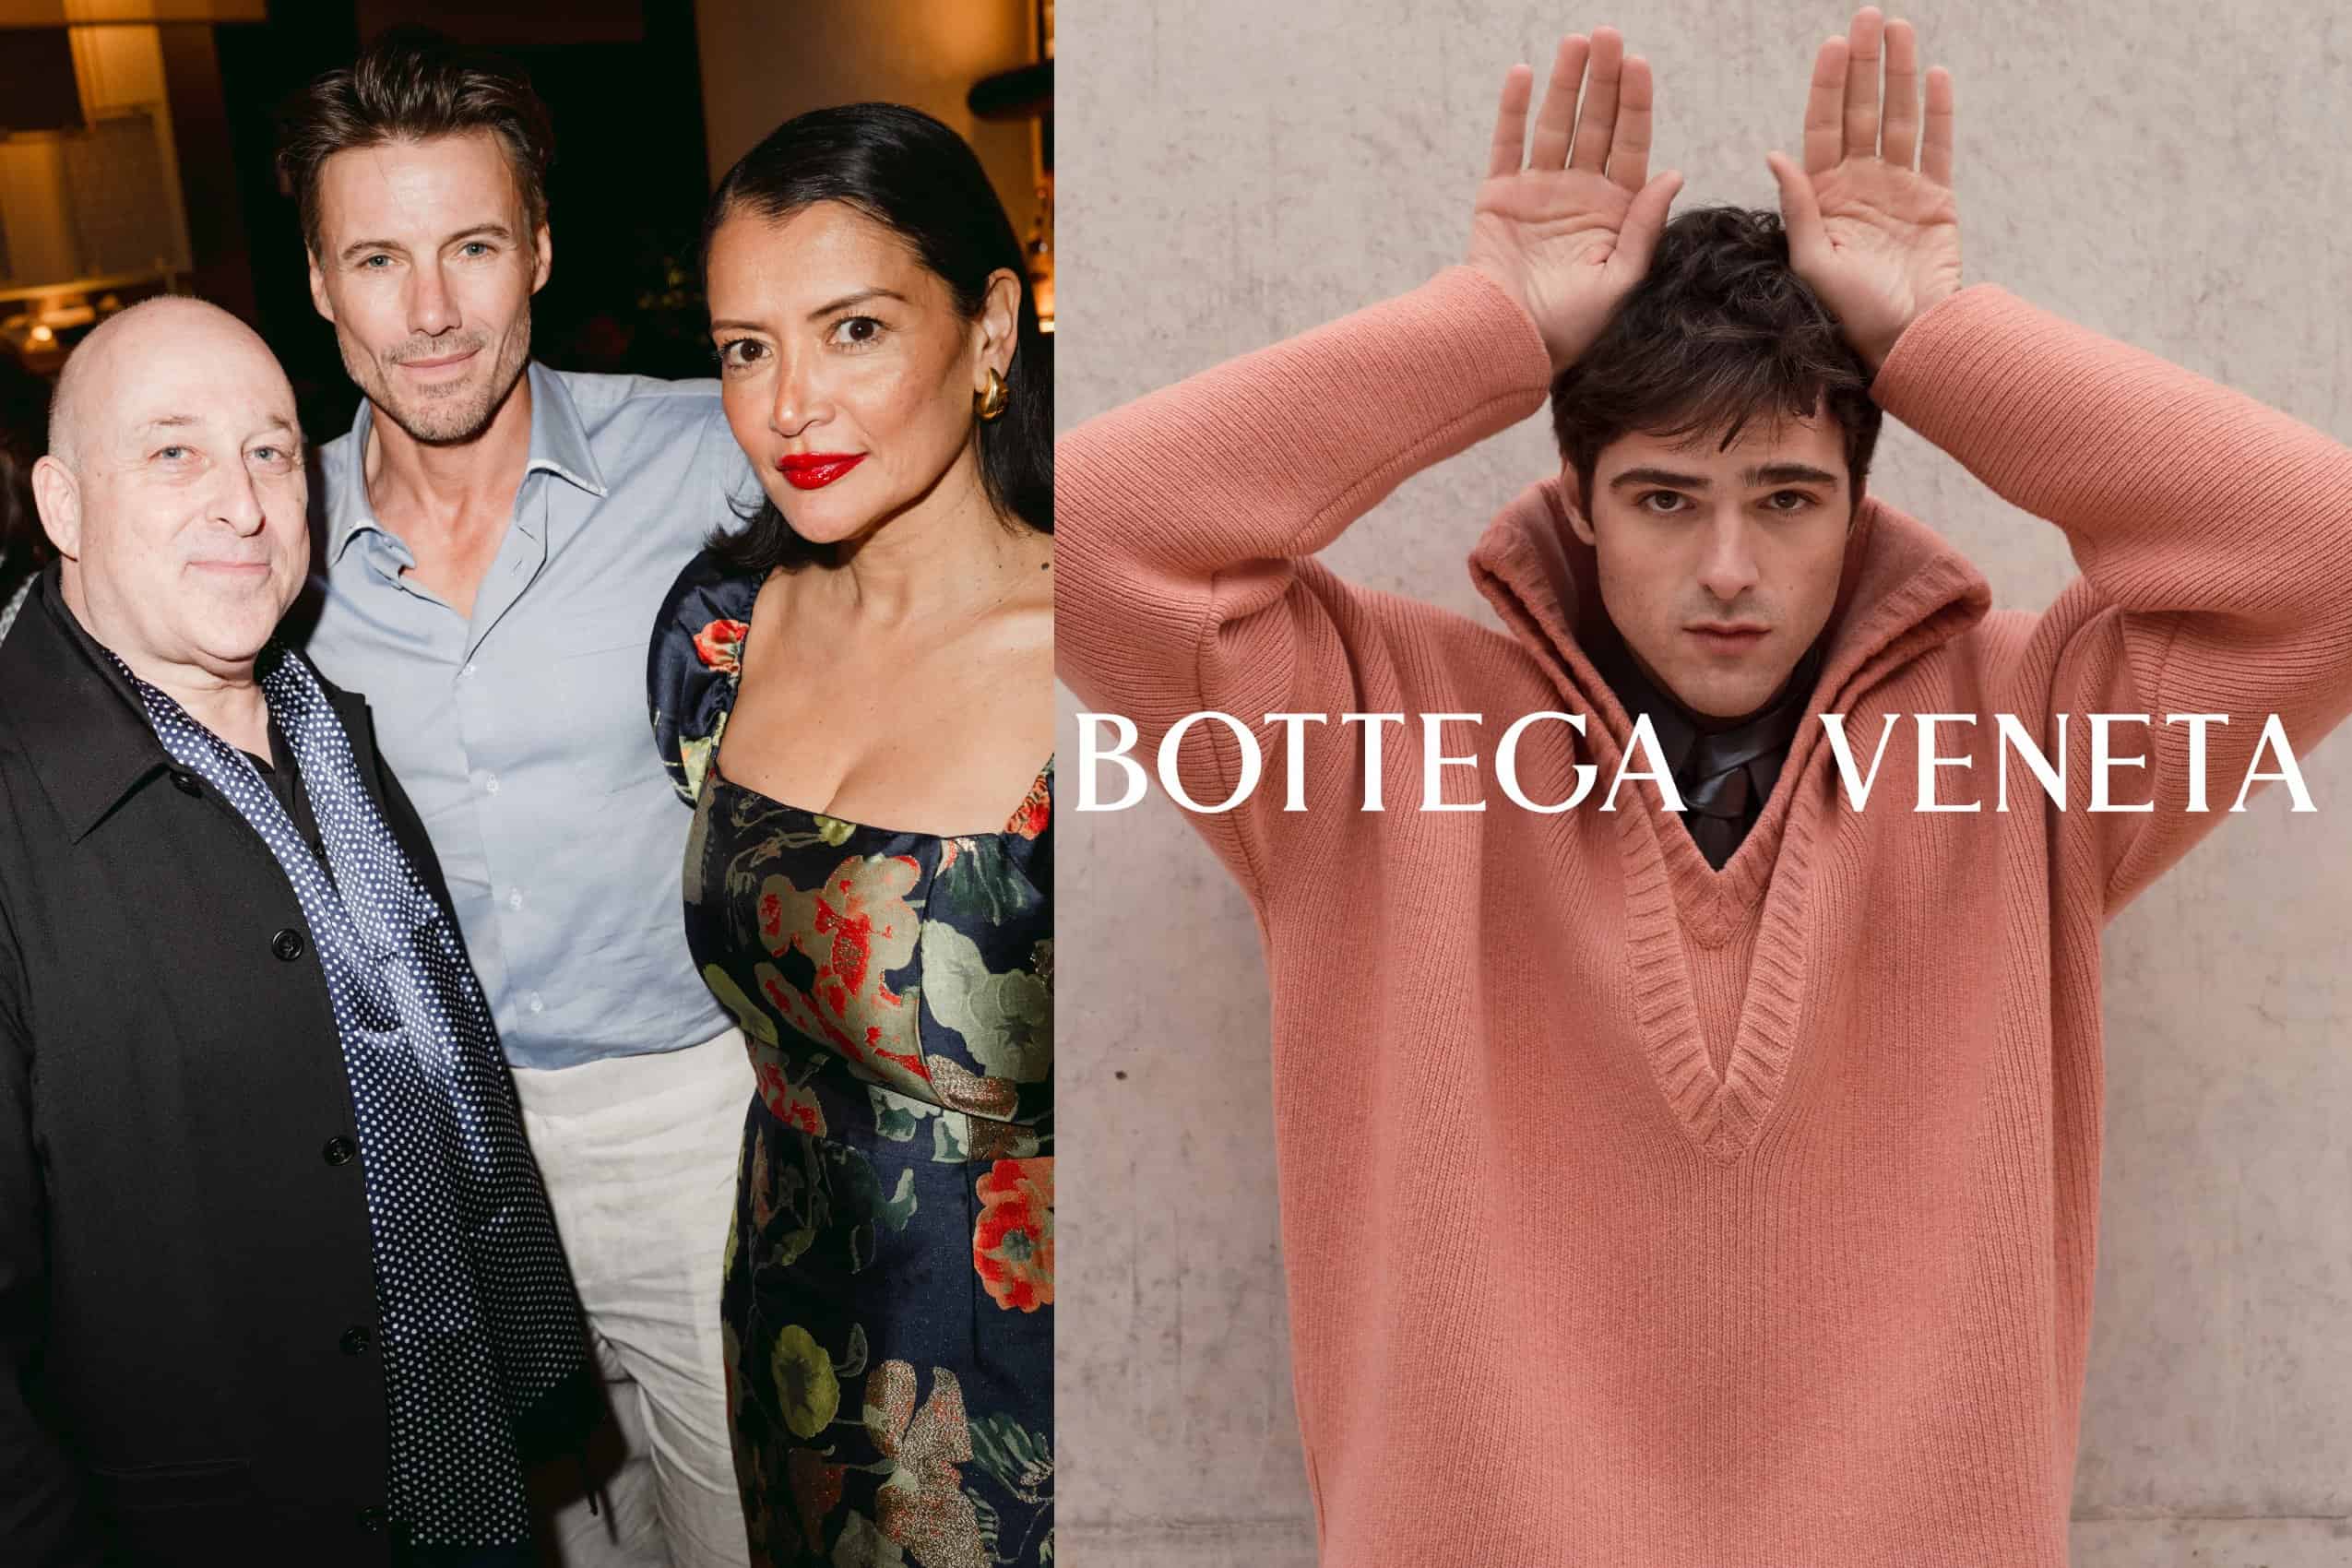 Bottega Veneta’s New Star, BondST’s 25th Anniversary Bash